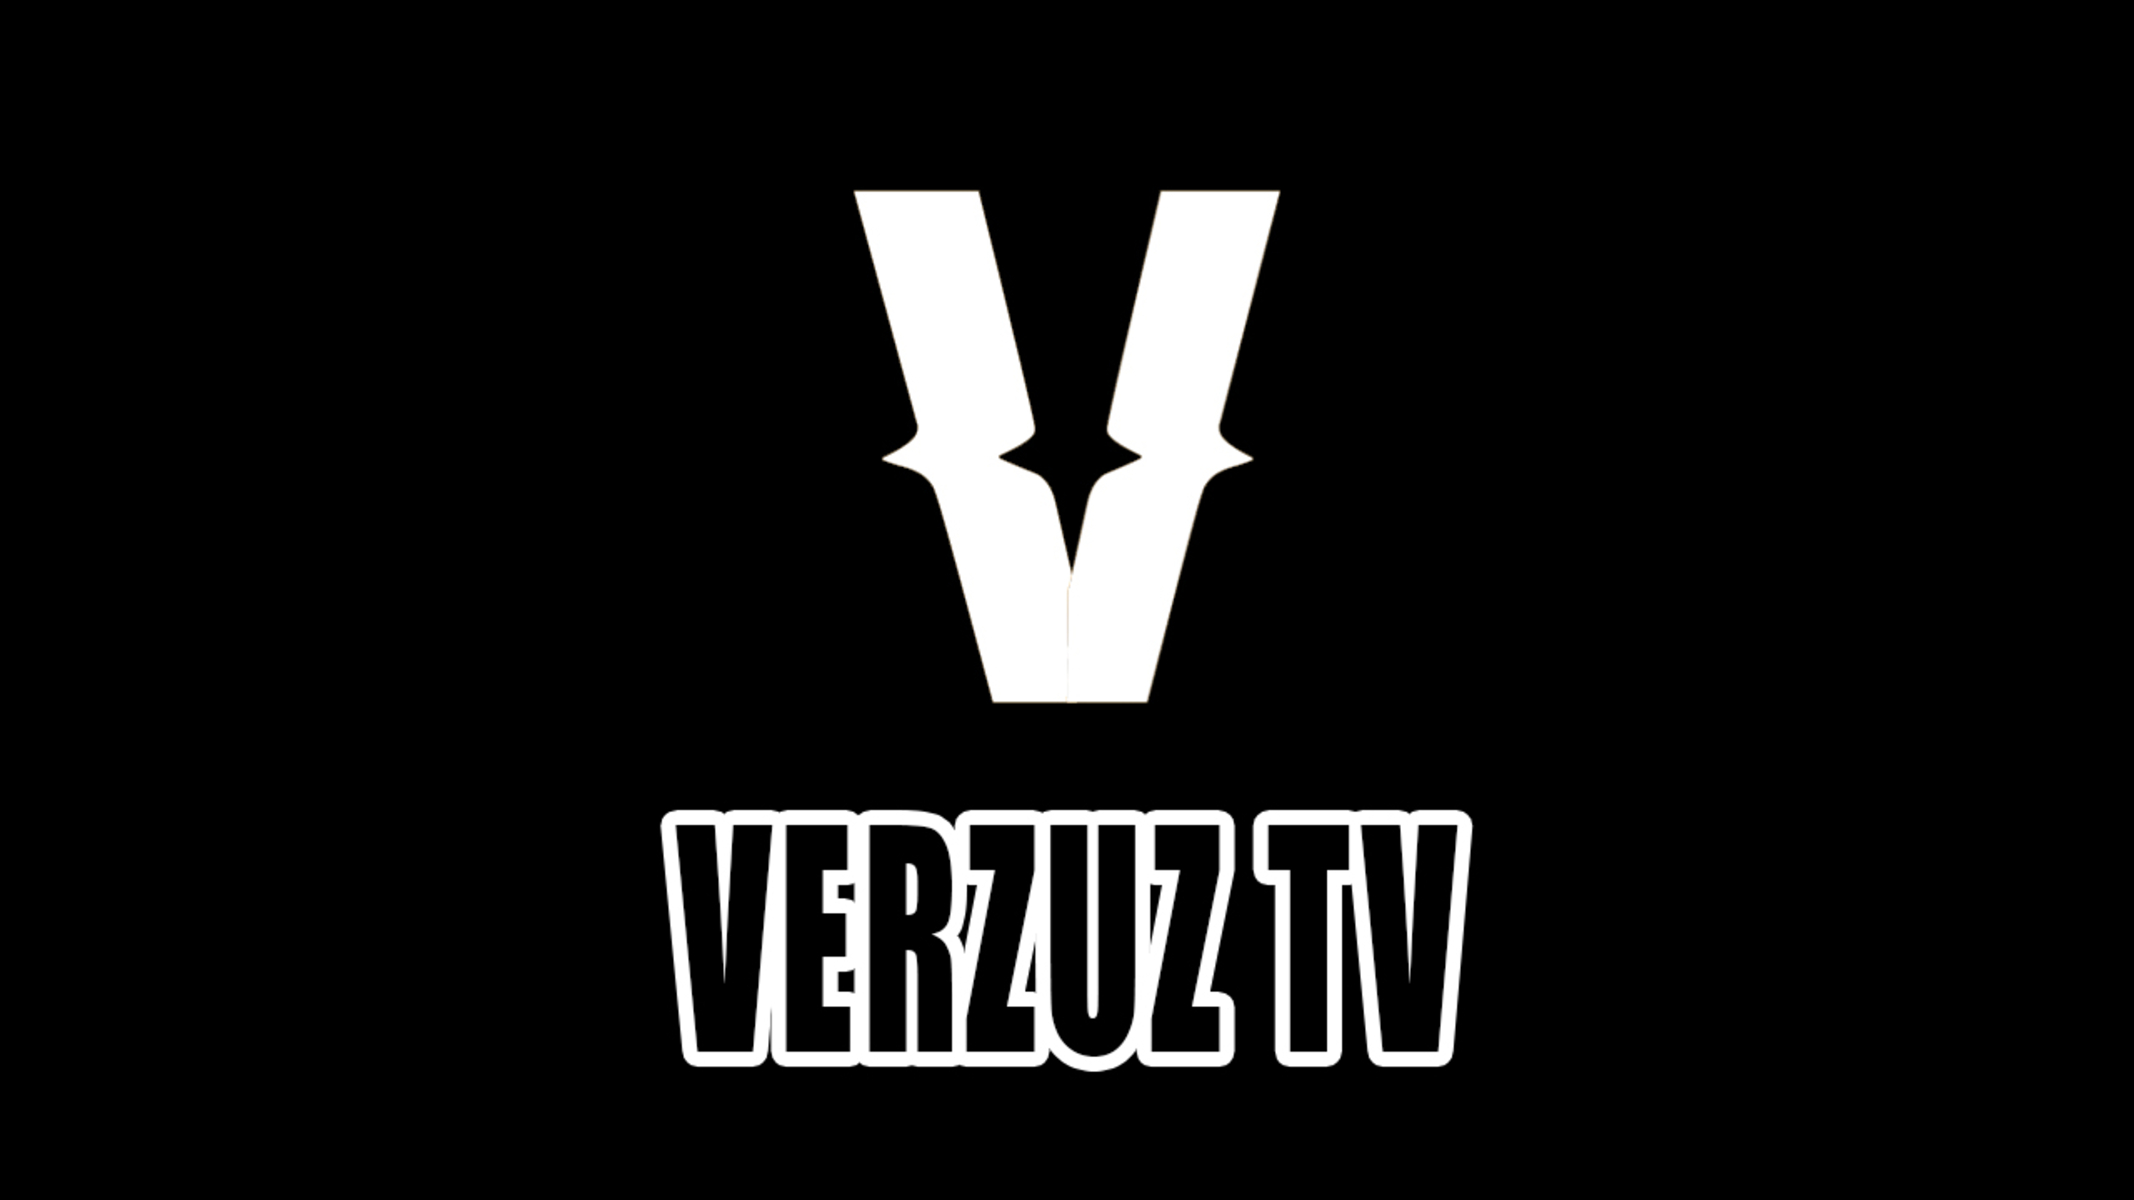 meyu-info-how-to-watch-verzuz-on-smart-tv